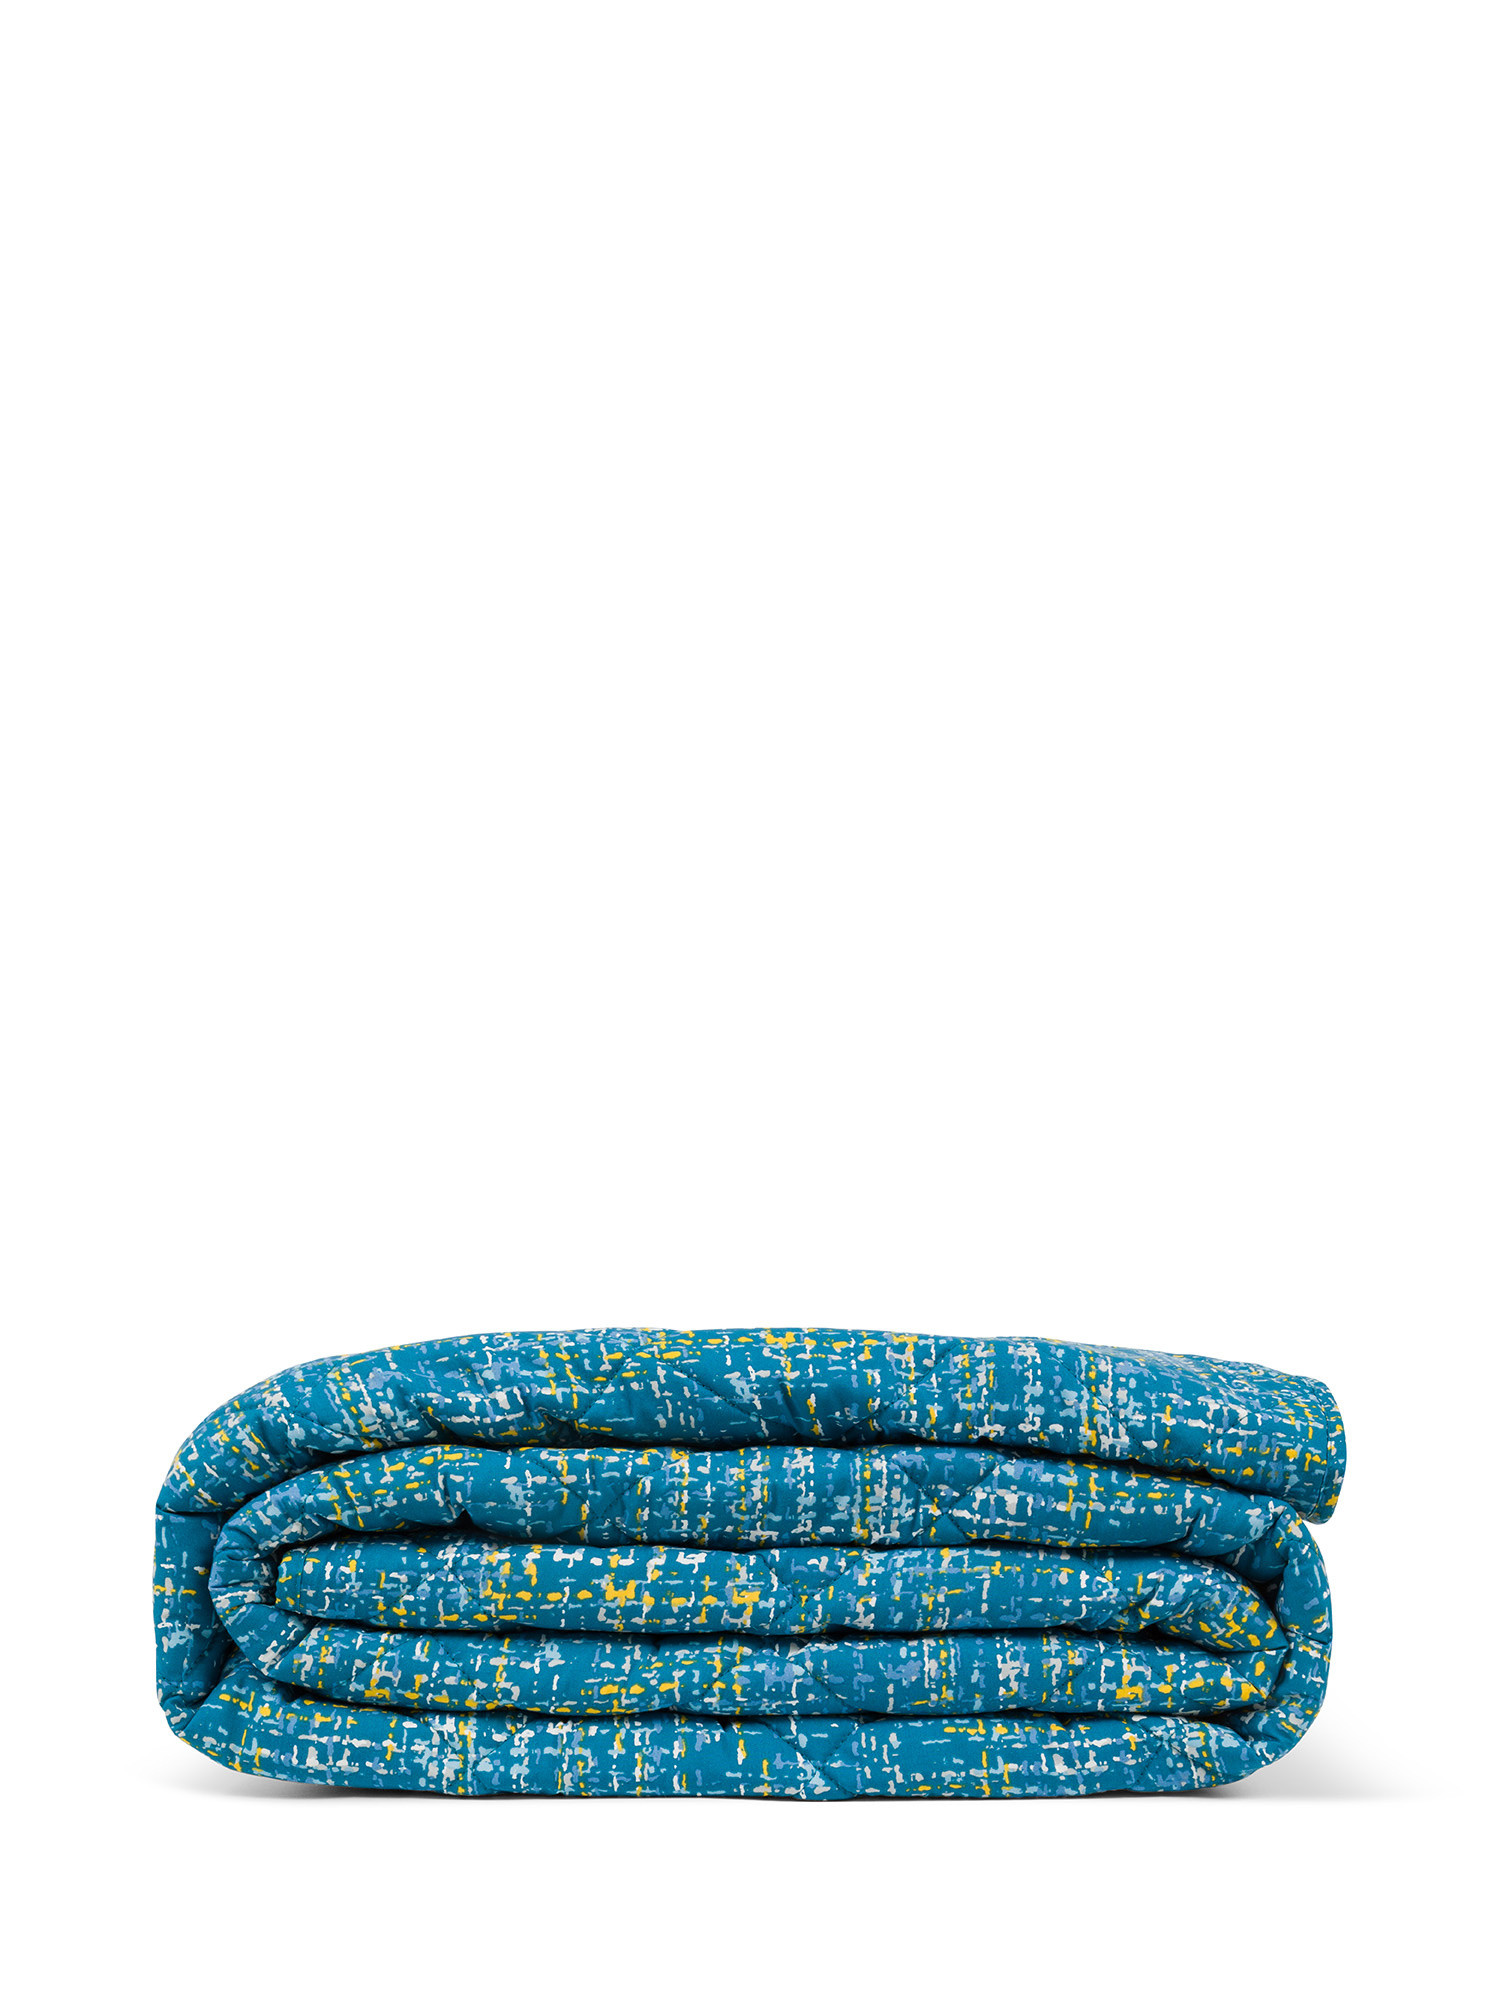 цифровой складной инфракрасное одеяло для похудения тела вес потери body shaper носимых вес одеяло детокс терапия машина Хлопковое одеяло с абстрактным рисунком Coincasa, синий